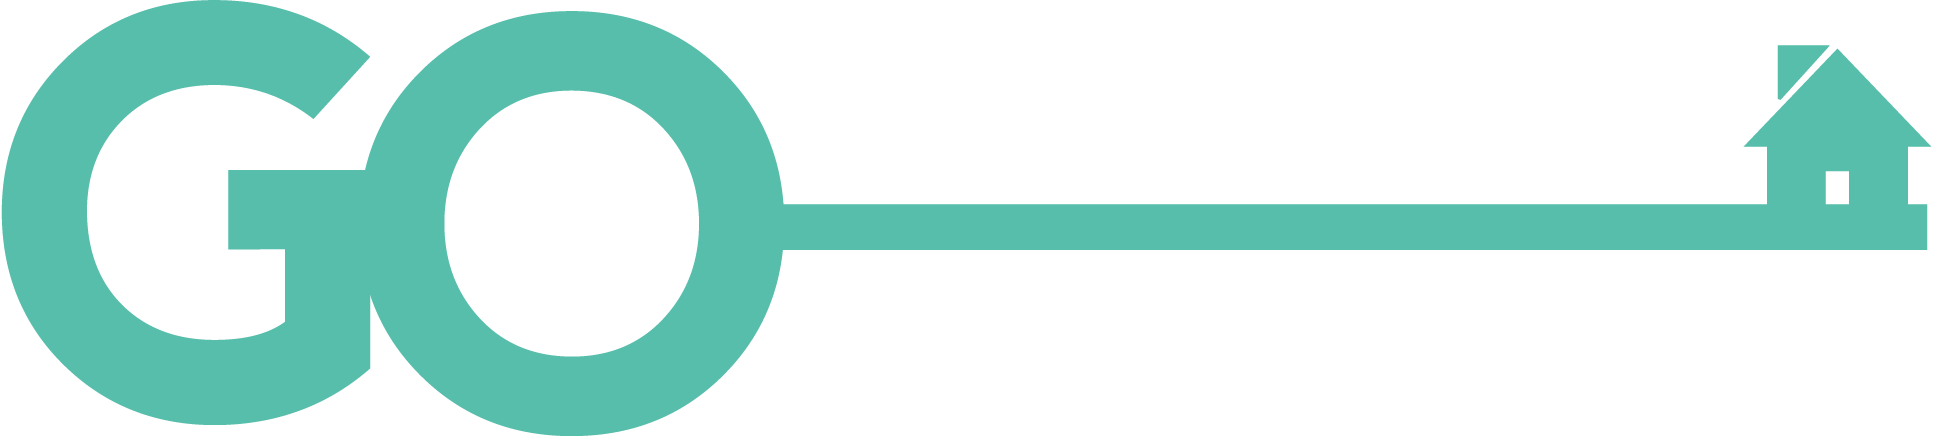 Go Property buyers